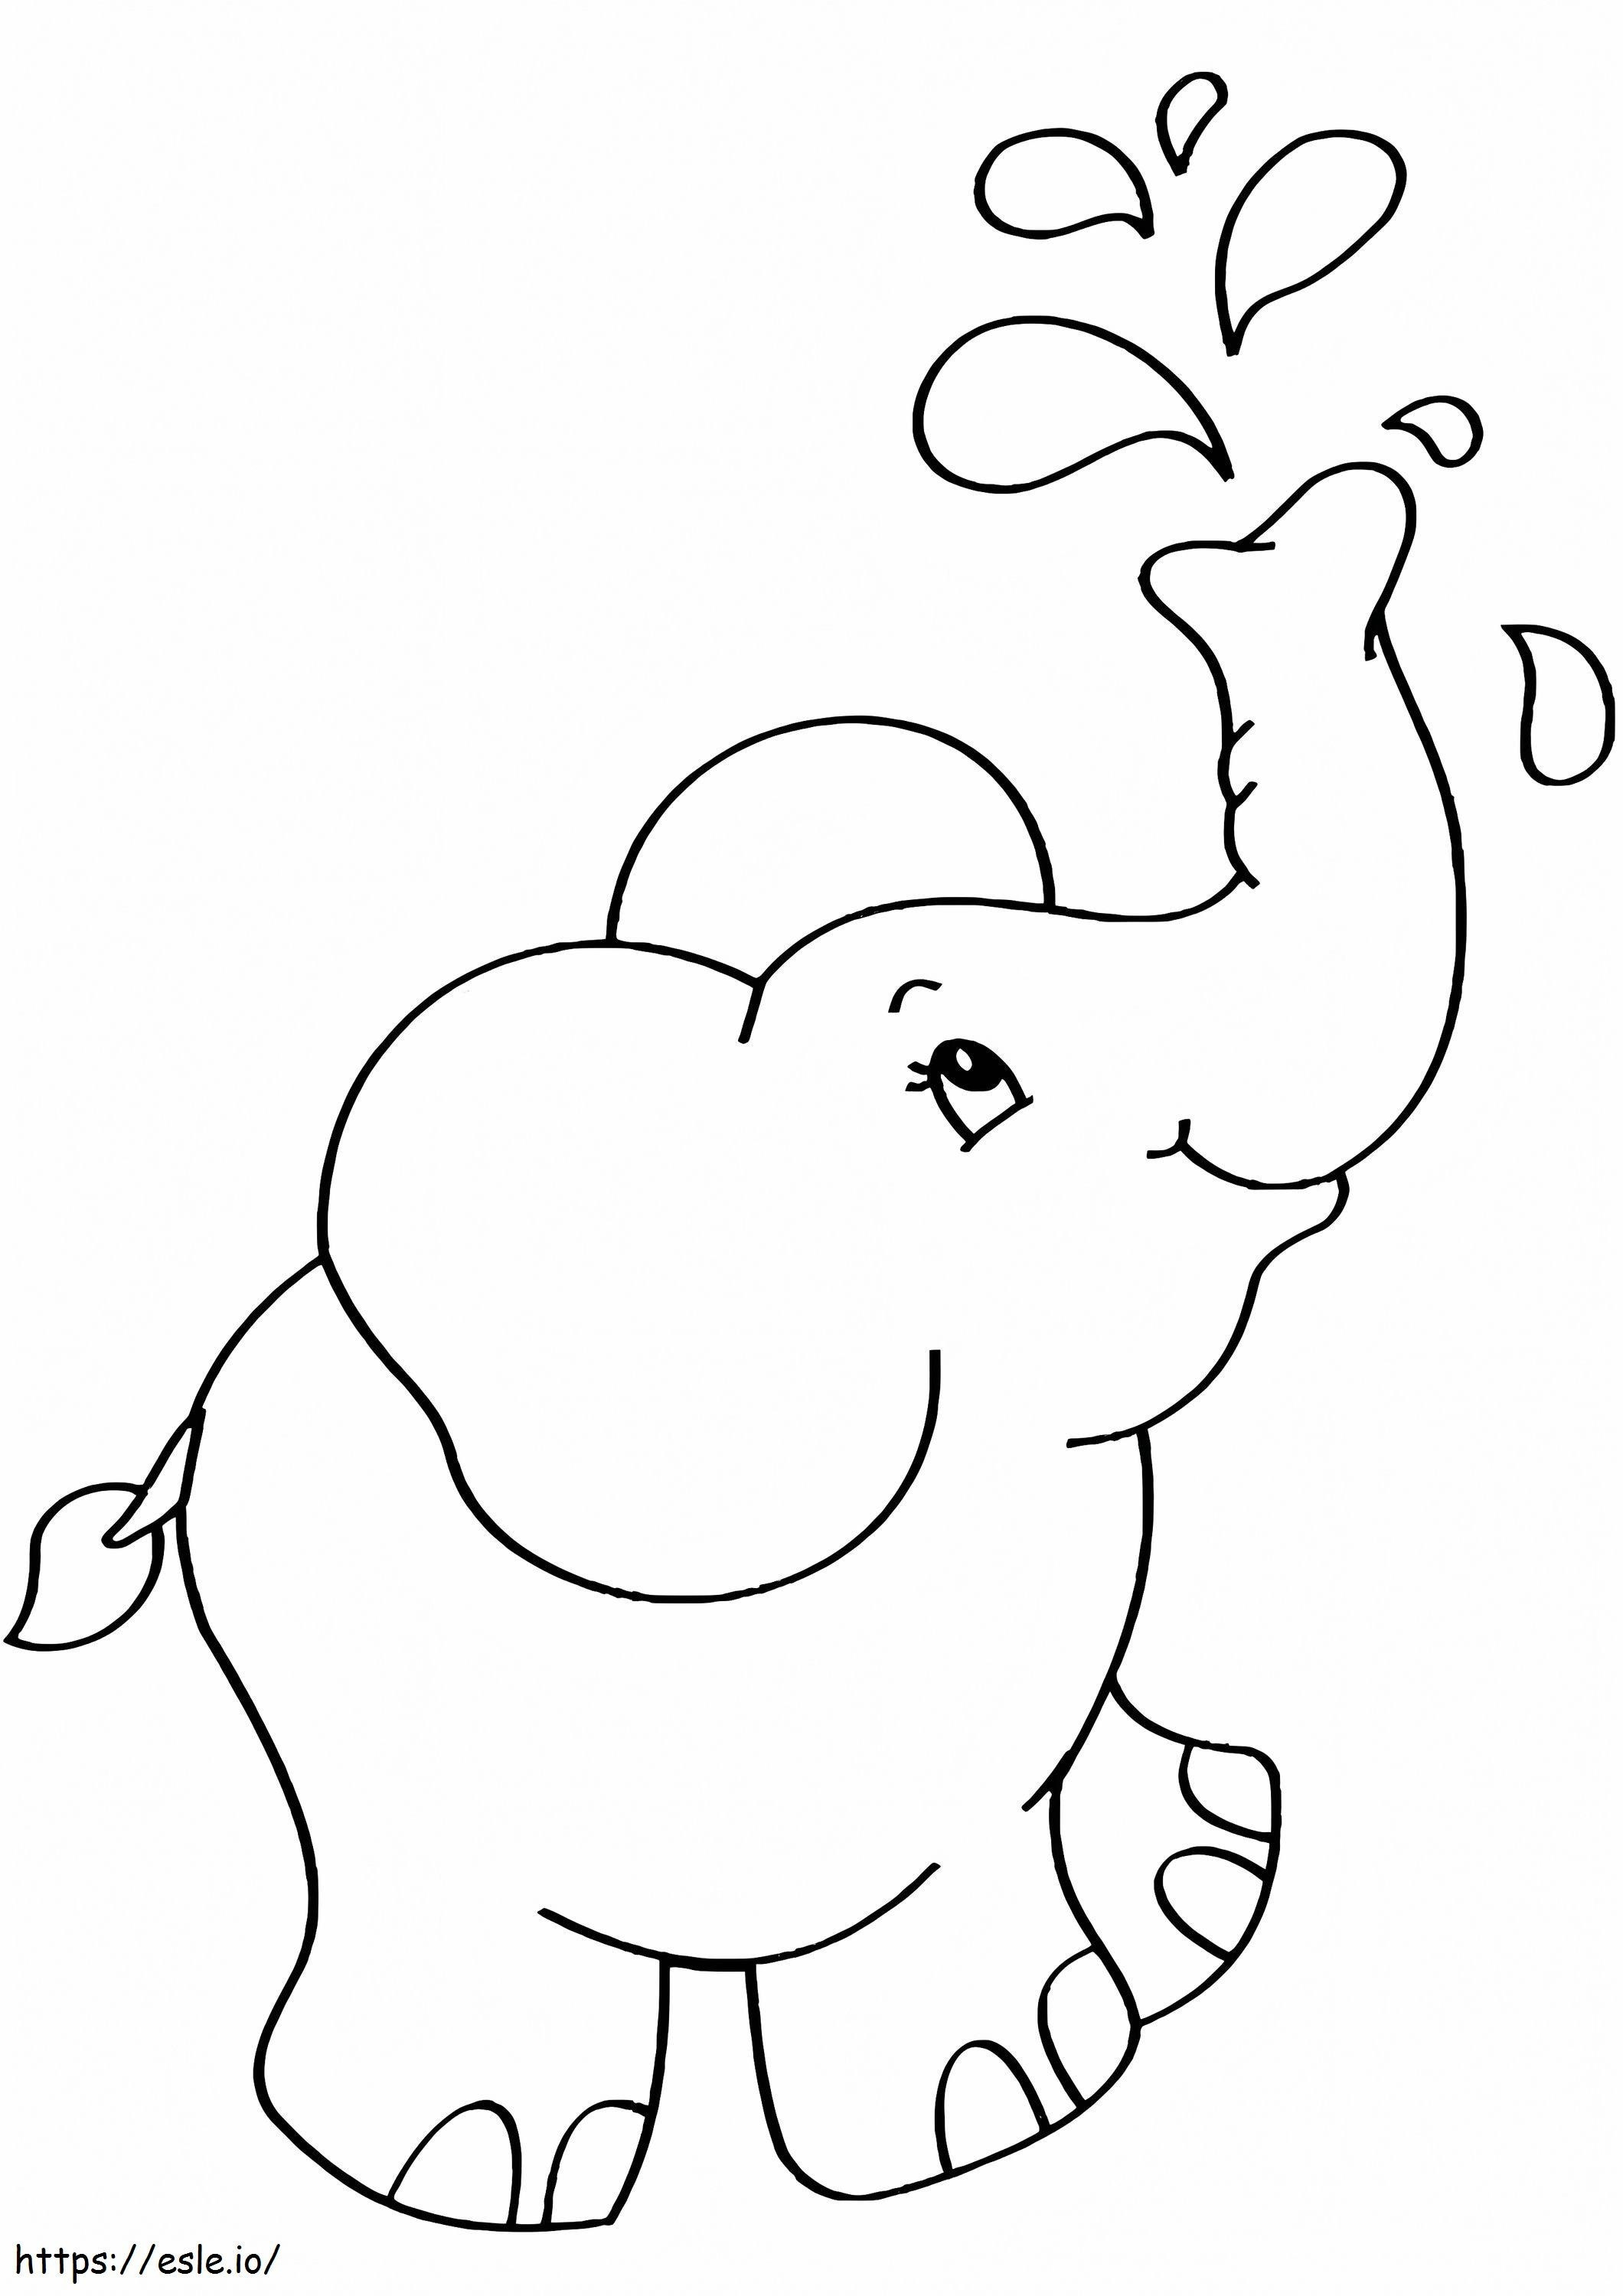 Elefante Mignon 4 para colorir